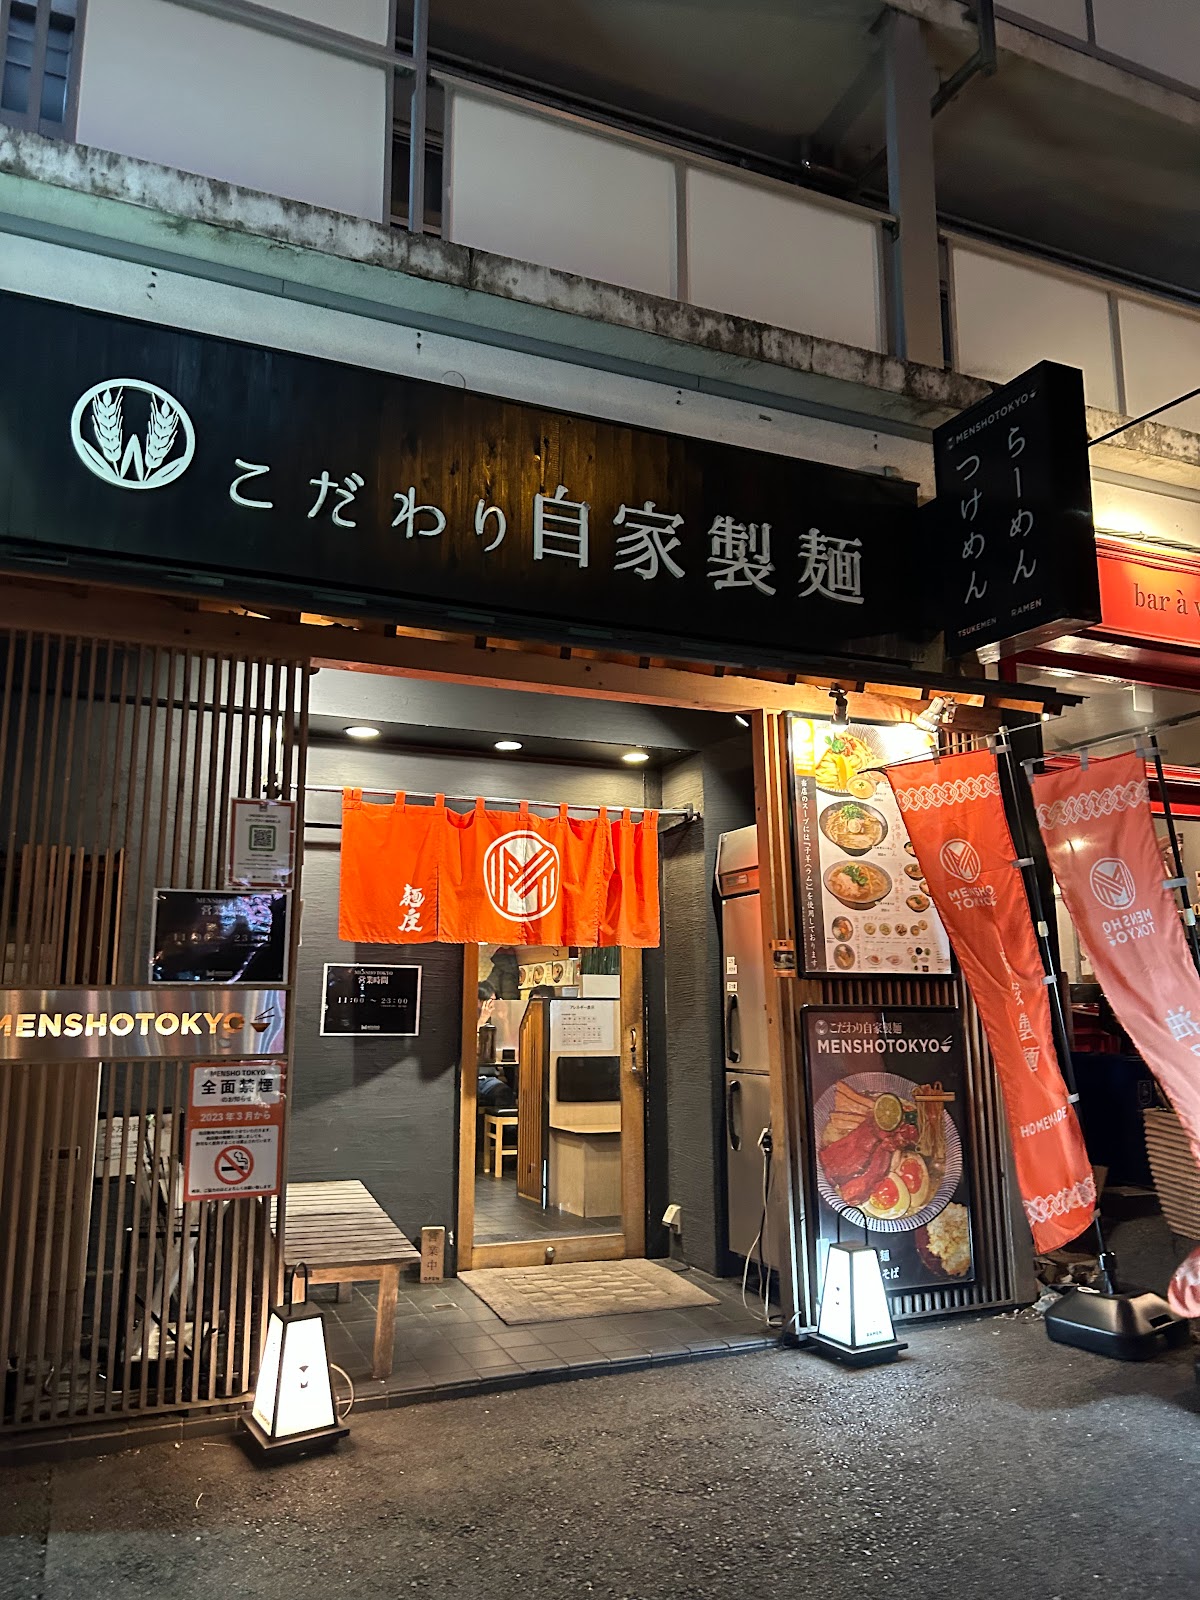 自家製麺 MENSHO TOKYOにて